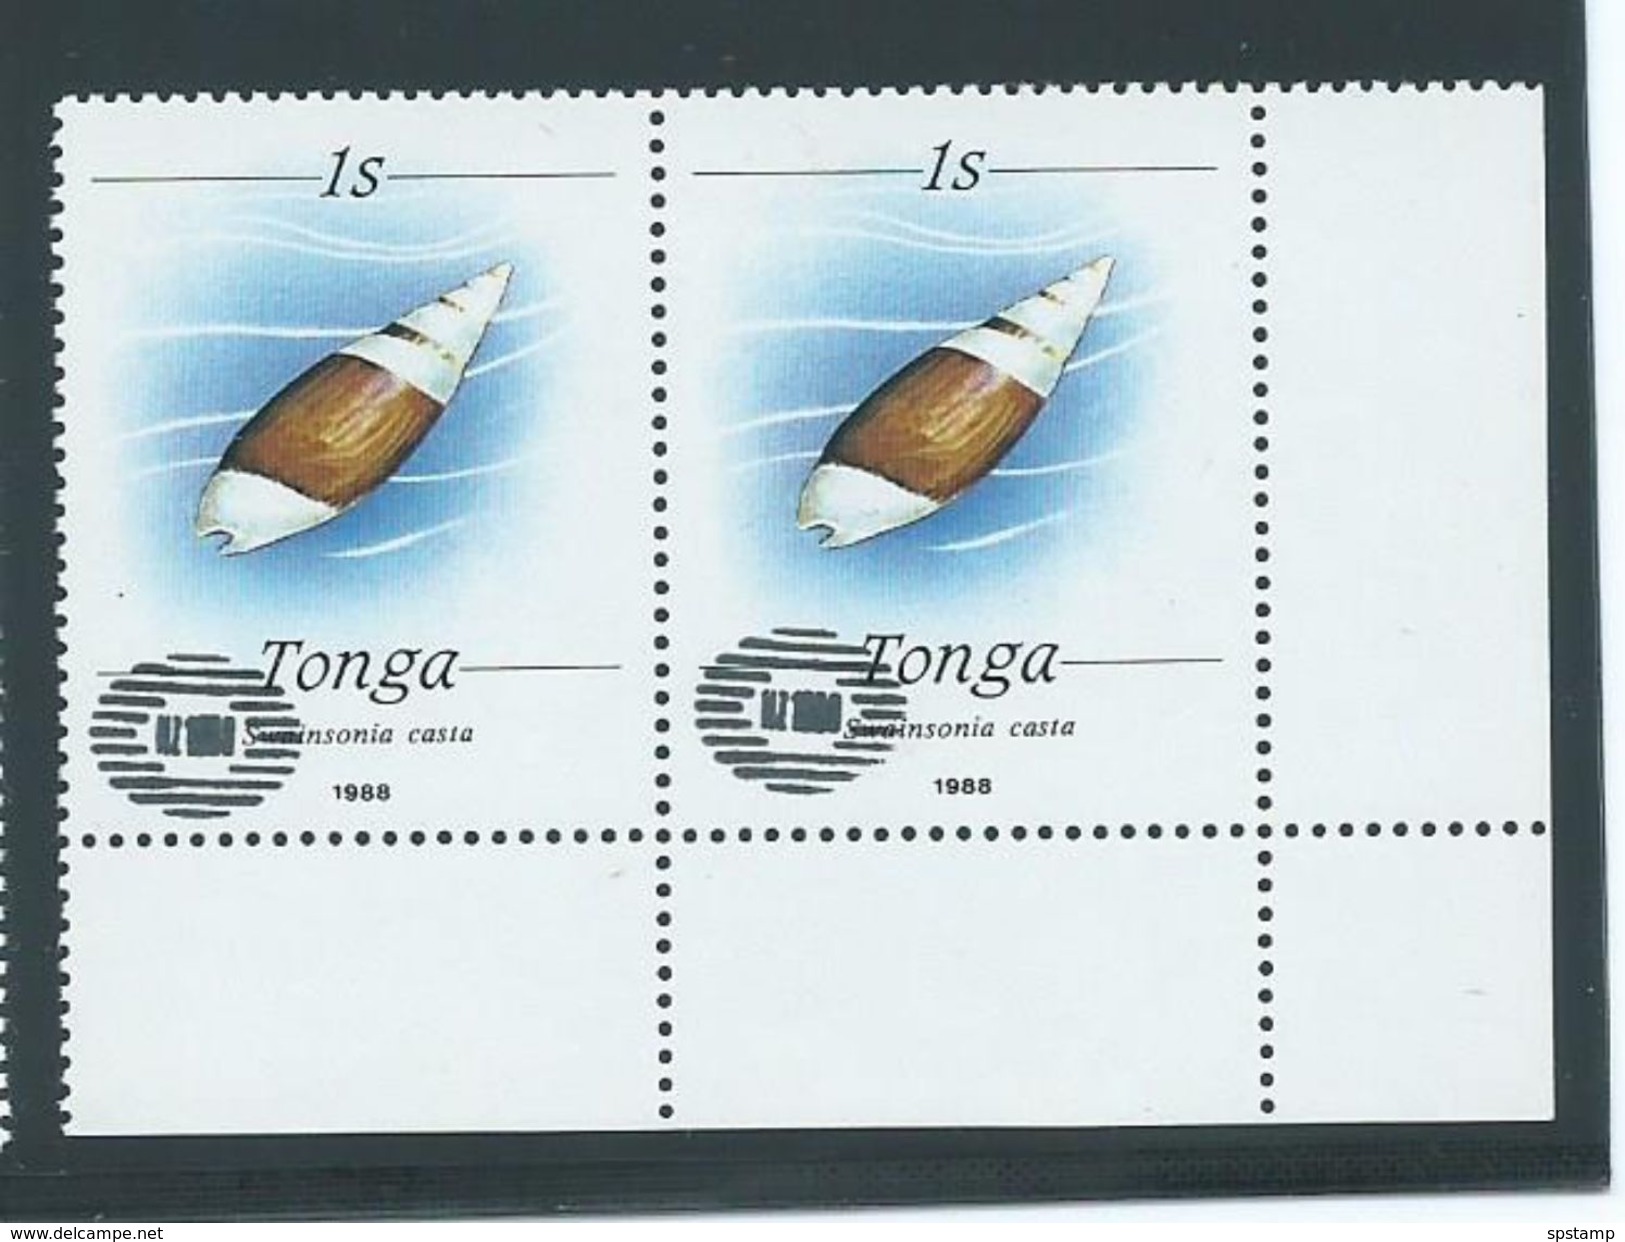 Tonga 1988 1s Shell Pair Private Unauthorised ' NZ 1990 ' Overprint  MNH - Tonga (1970-...)